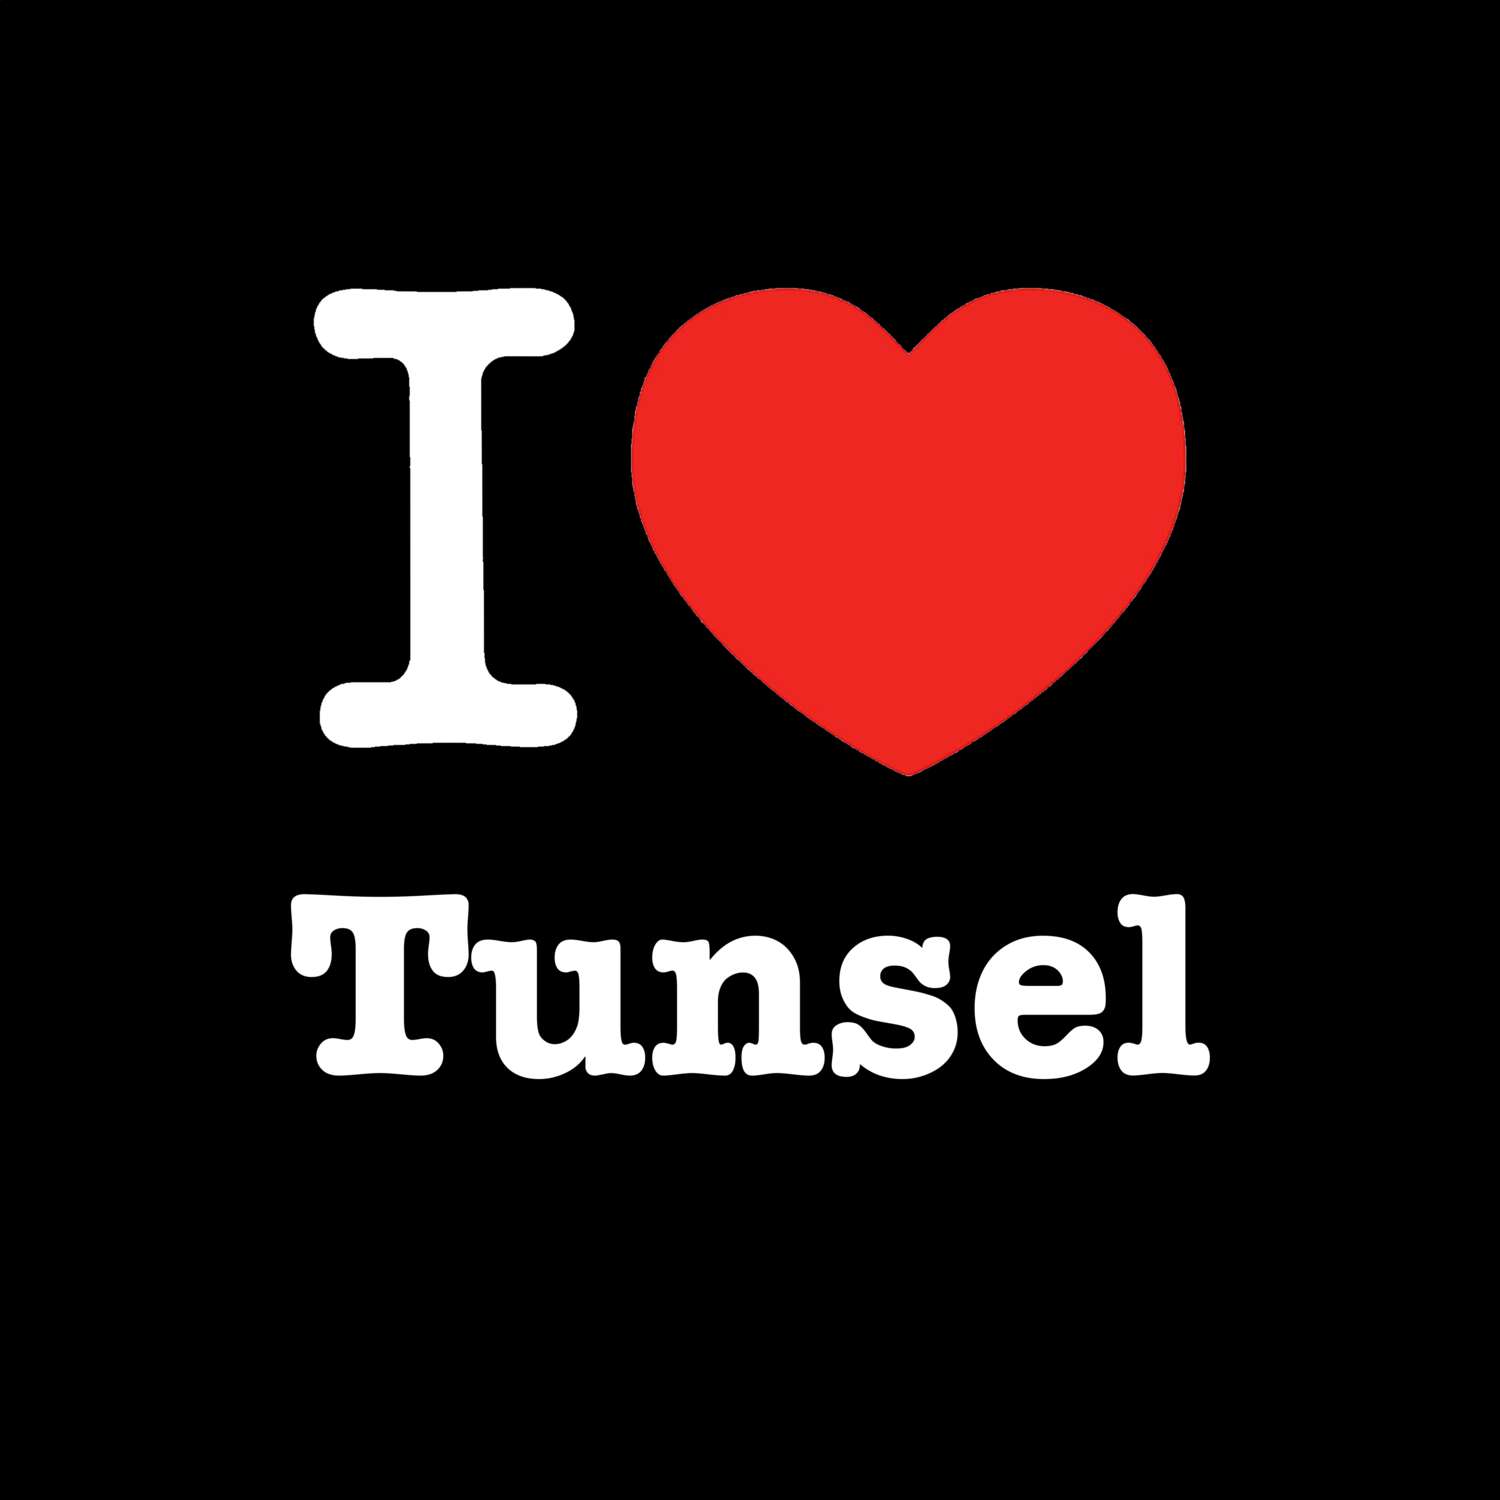 Tunsel T-Shirt »I love«